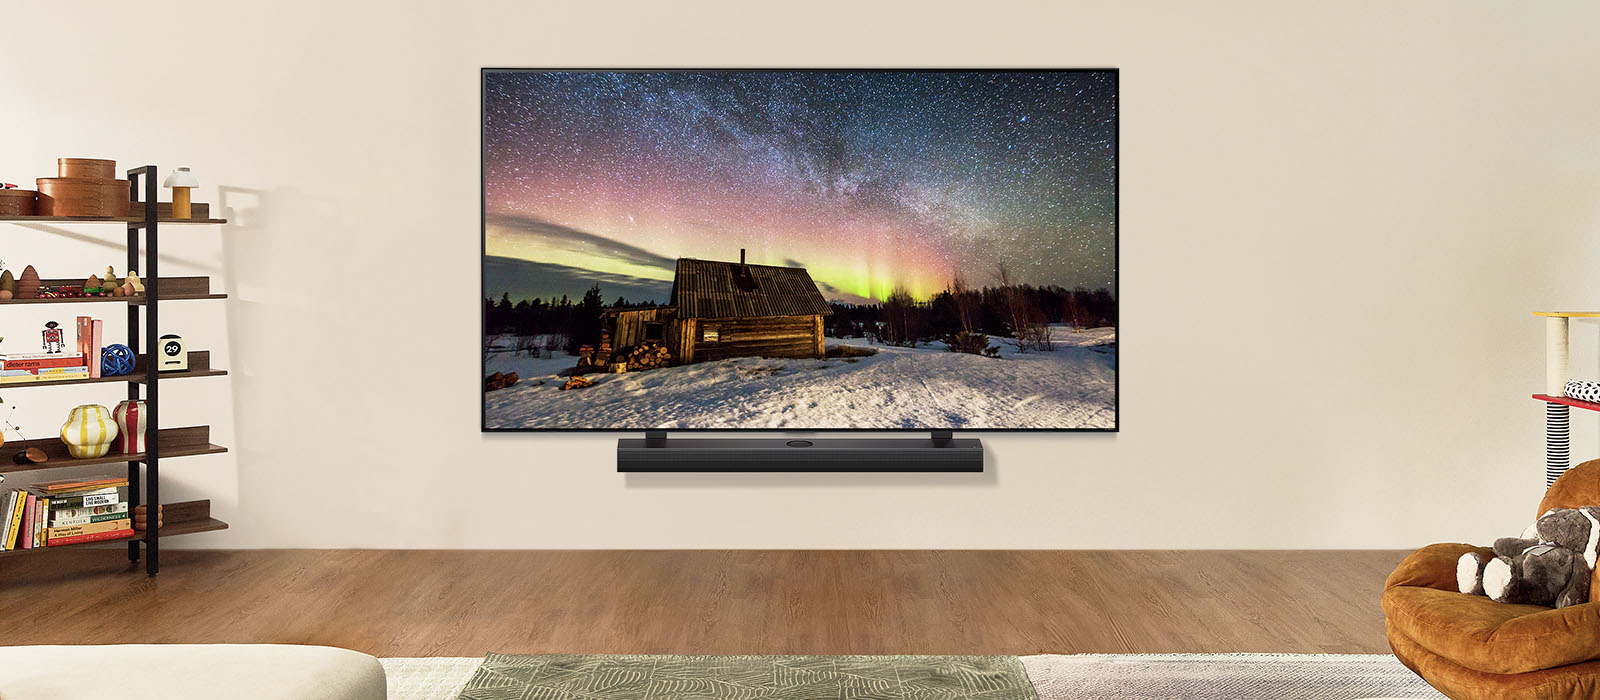 Телевизор LG и звуковая панель LG Soundbar в современном жилом пространстве в дневное время. Северное сияние отображается на экране с идеальным уровнем яркости.